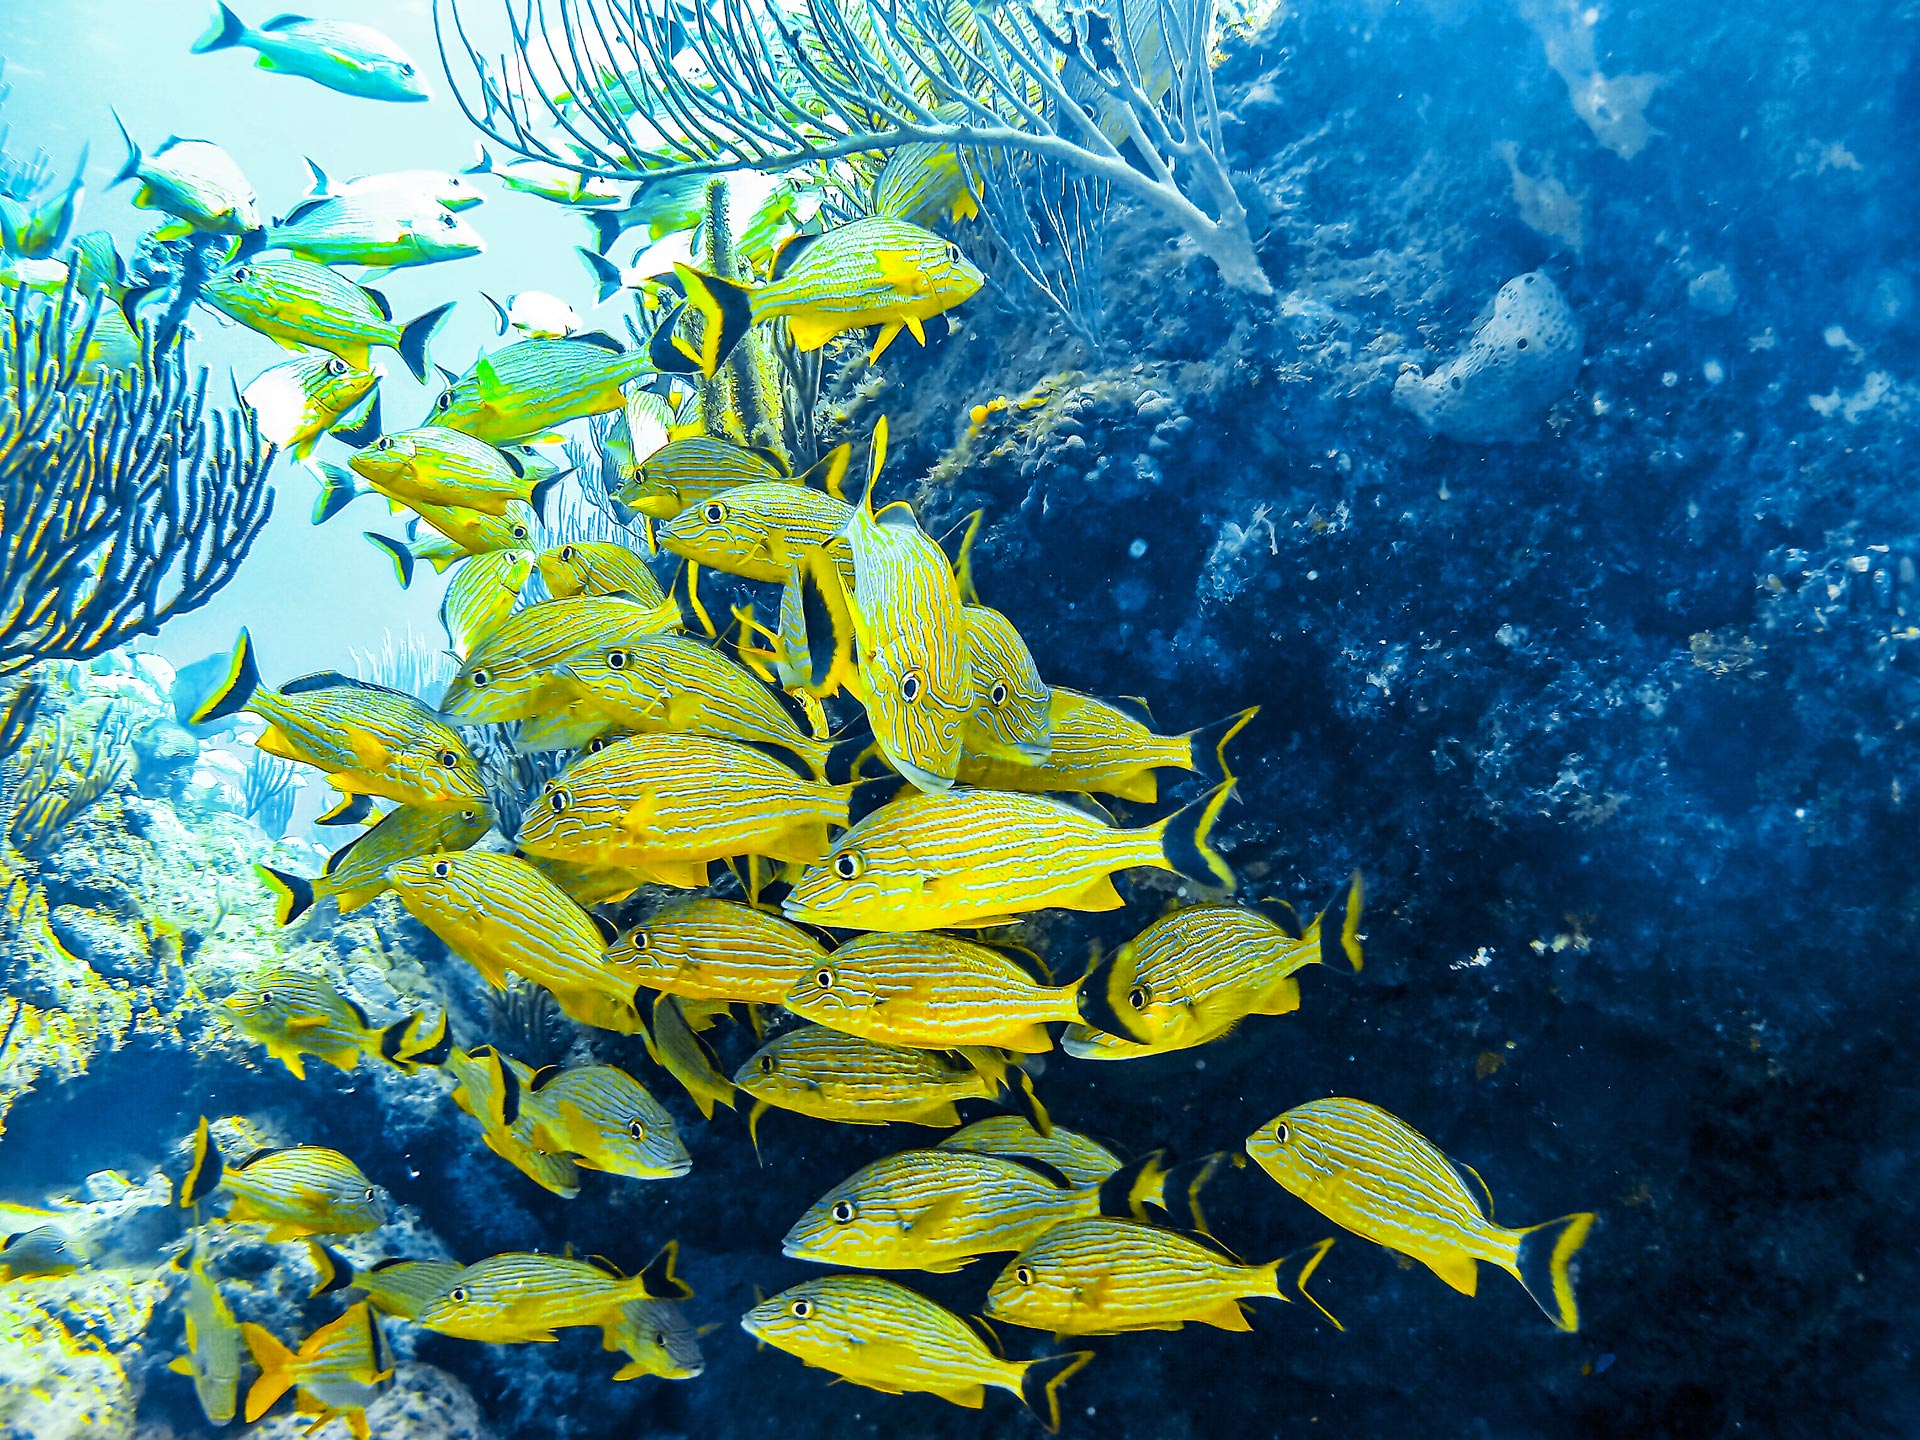 Group of yellow fish at coral reef near Varadero, Cuba